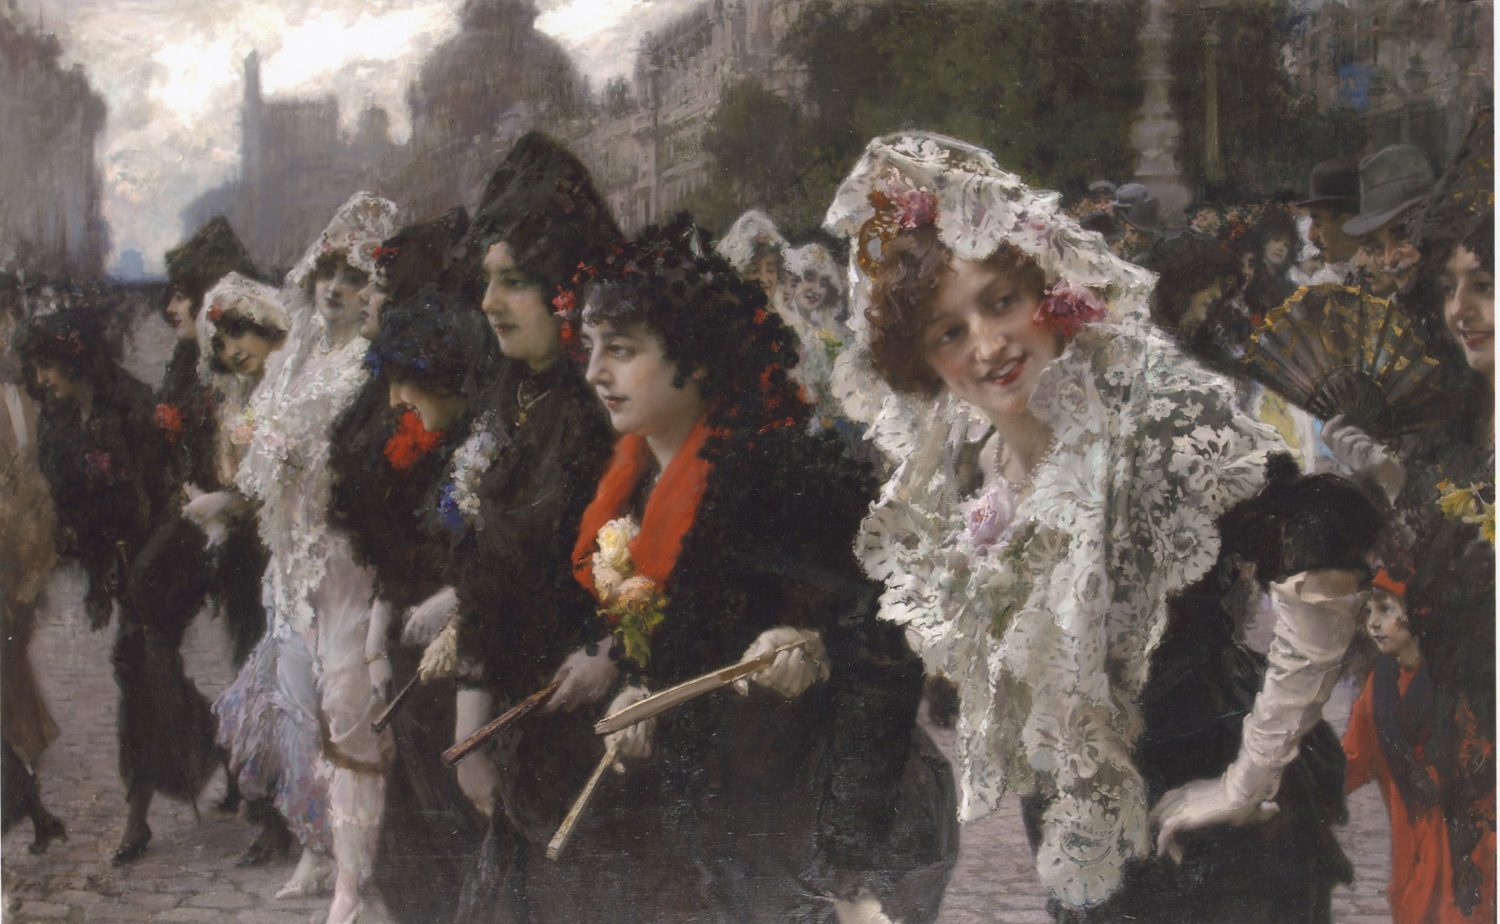 Francisco Pradilla. El Viernes Santo en Madrid. Paseo de mantillas, 1914. Museo de Historia de Madrid.